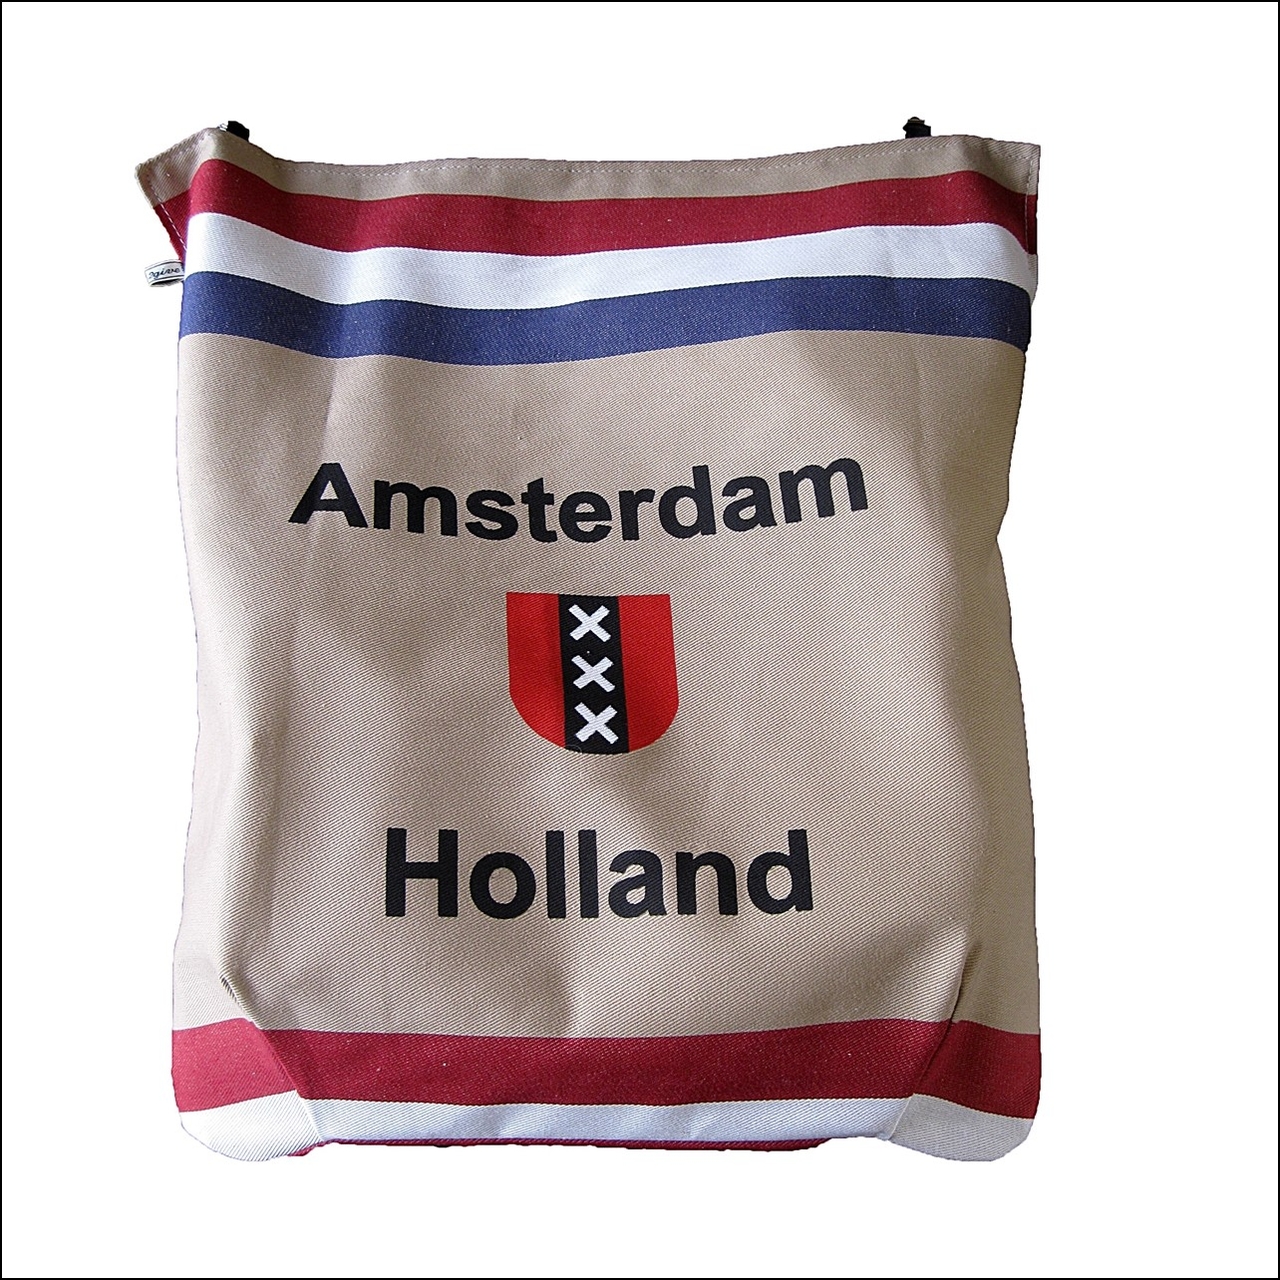 ui Beperken geest postvanger / postopvanger / brievenbuszak Amsterdam holland - Postvangers